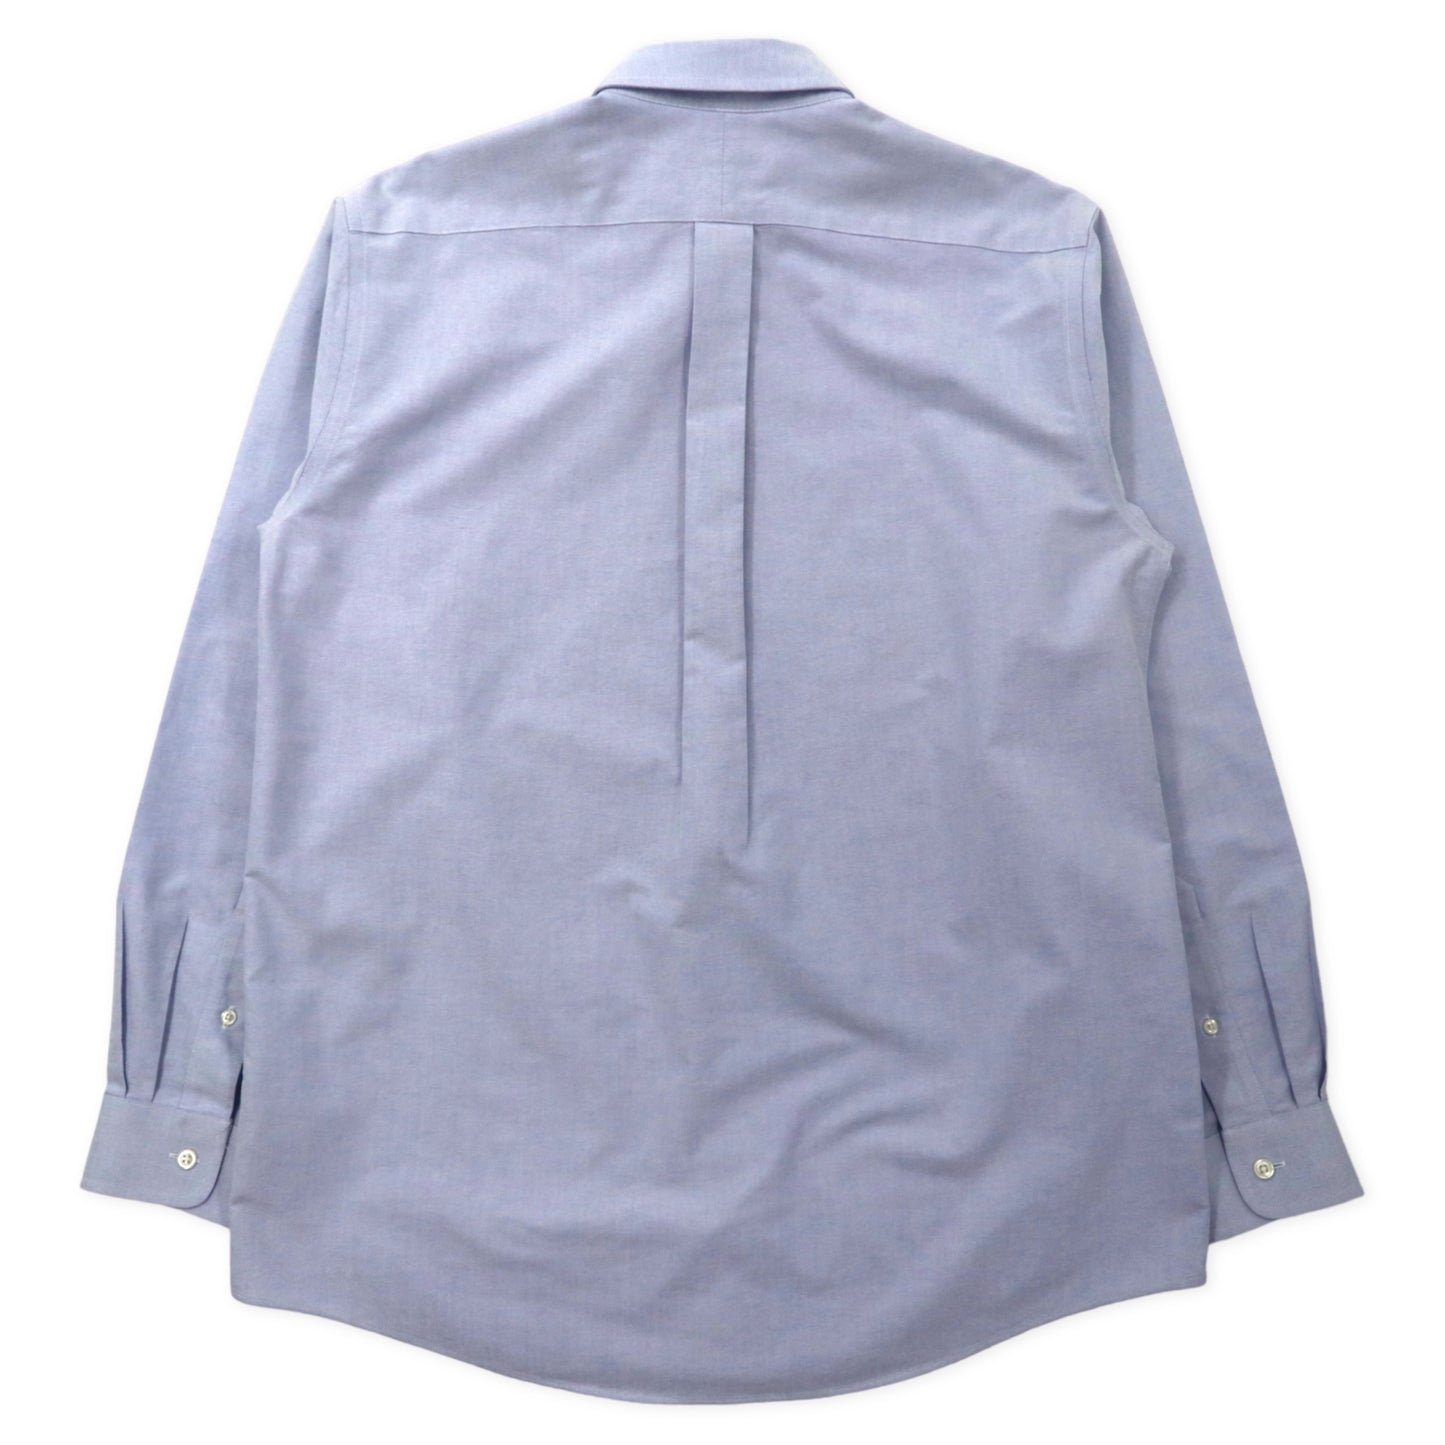 L.L.Bean オックスフォード ボタンダウンシャツ 15 1/2 - 34 ブルー コットン WRINKLE RESISTANT 0VV73